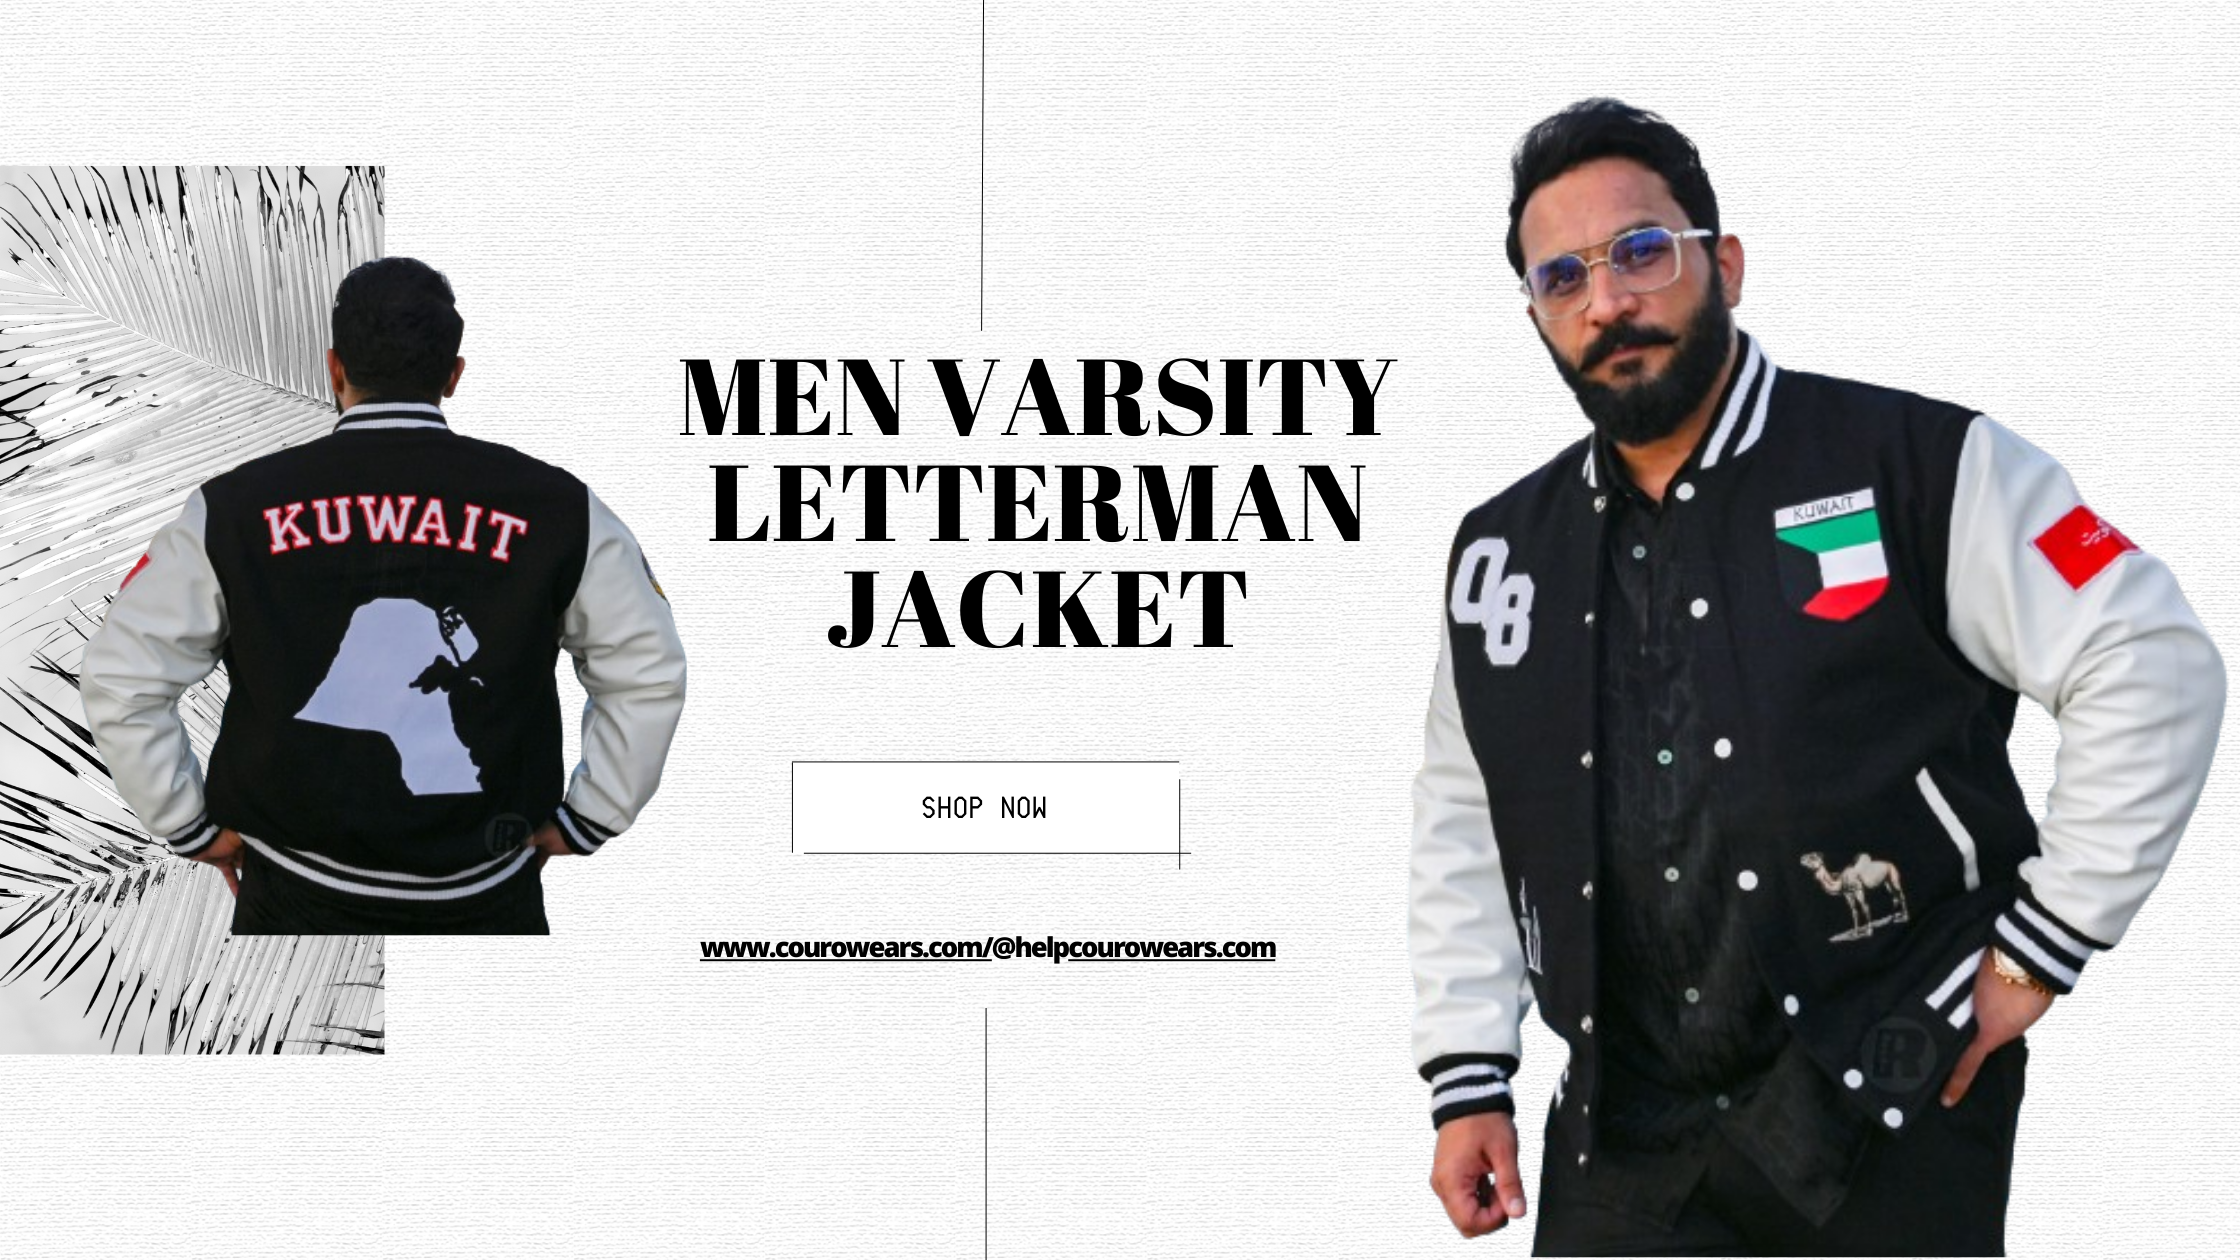 Men Varsity Letterman Jacket